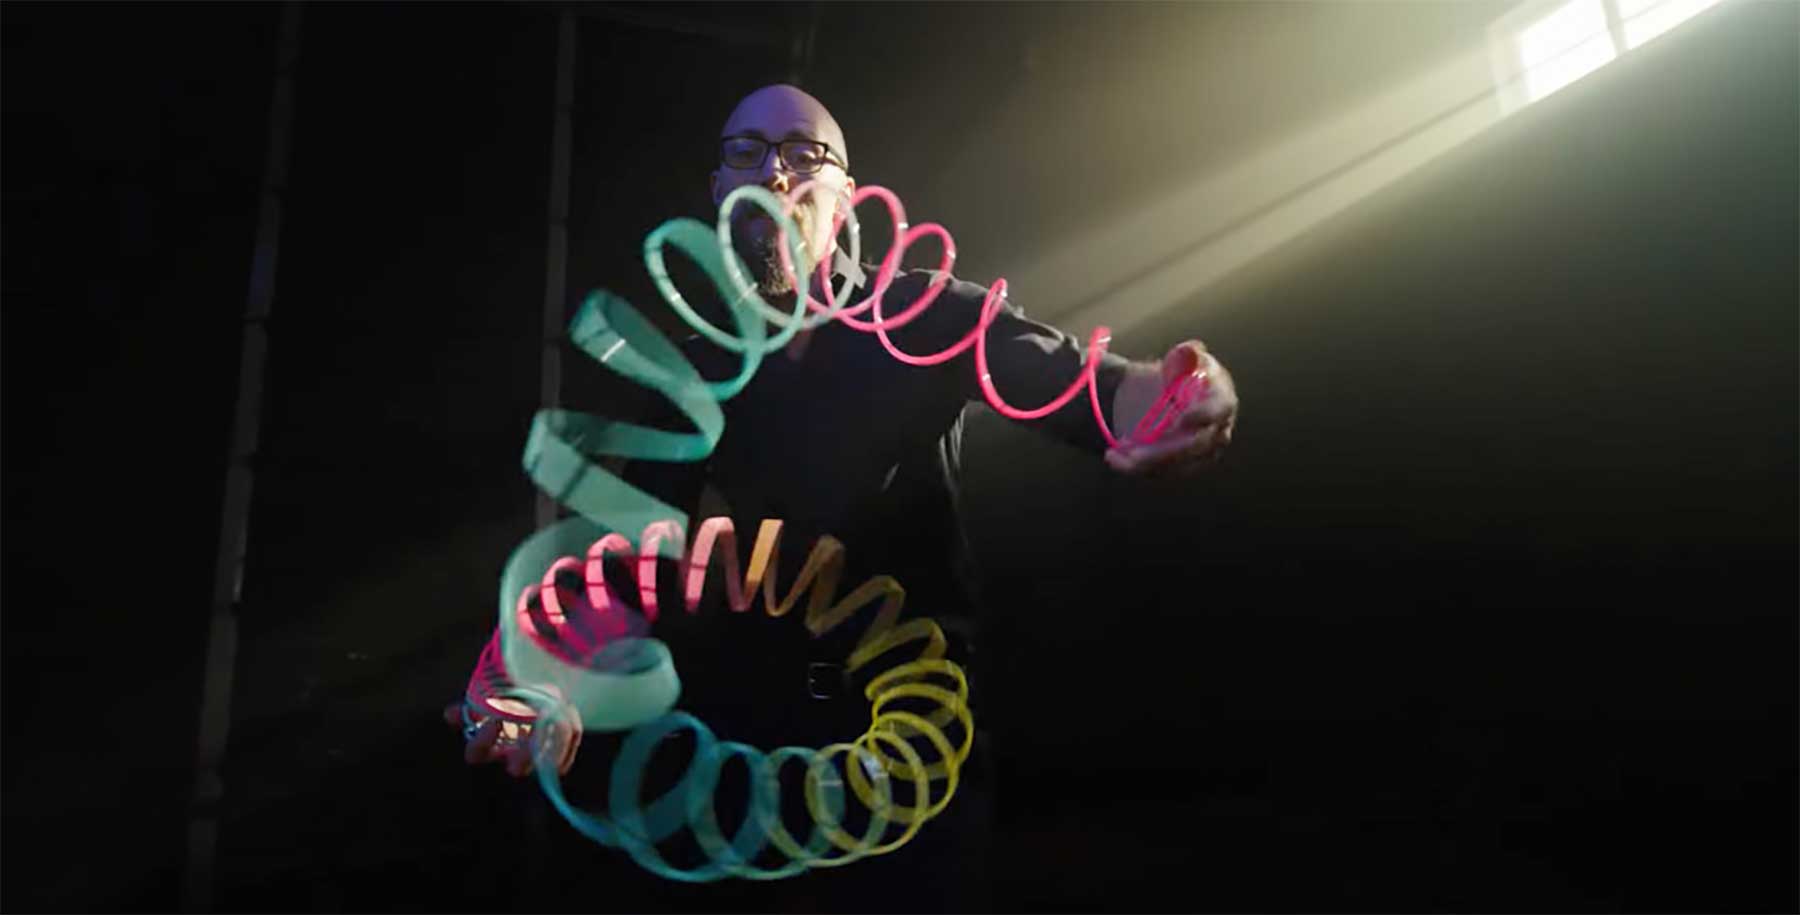 Slinky-Profi Josh Jacobs Slinky-profi-josh-jacobs 